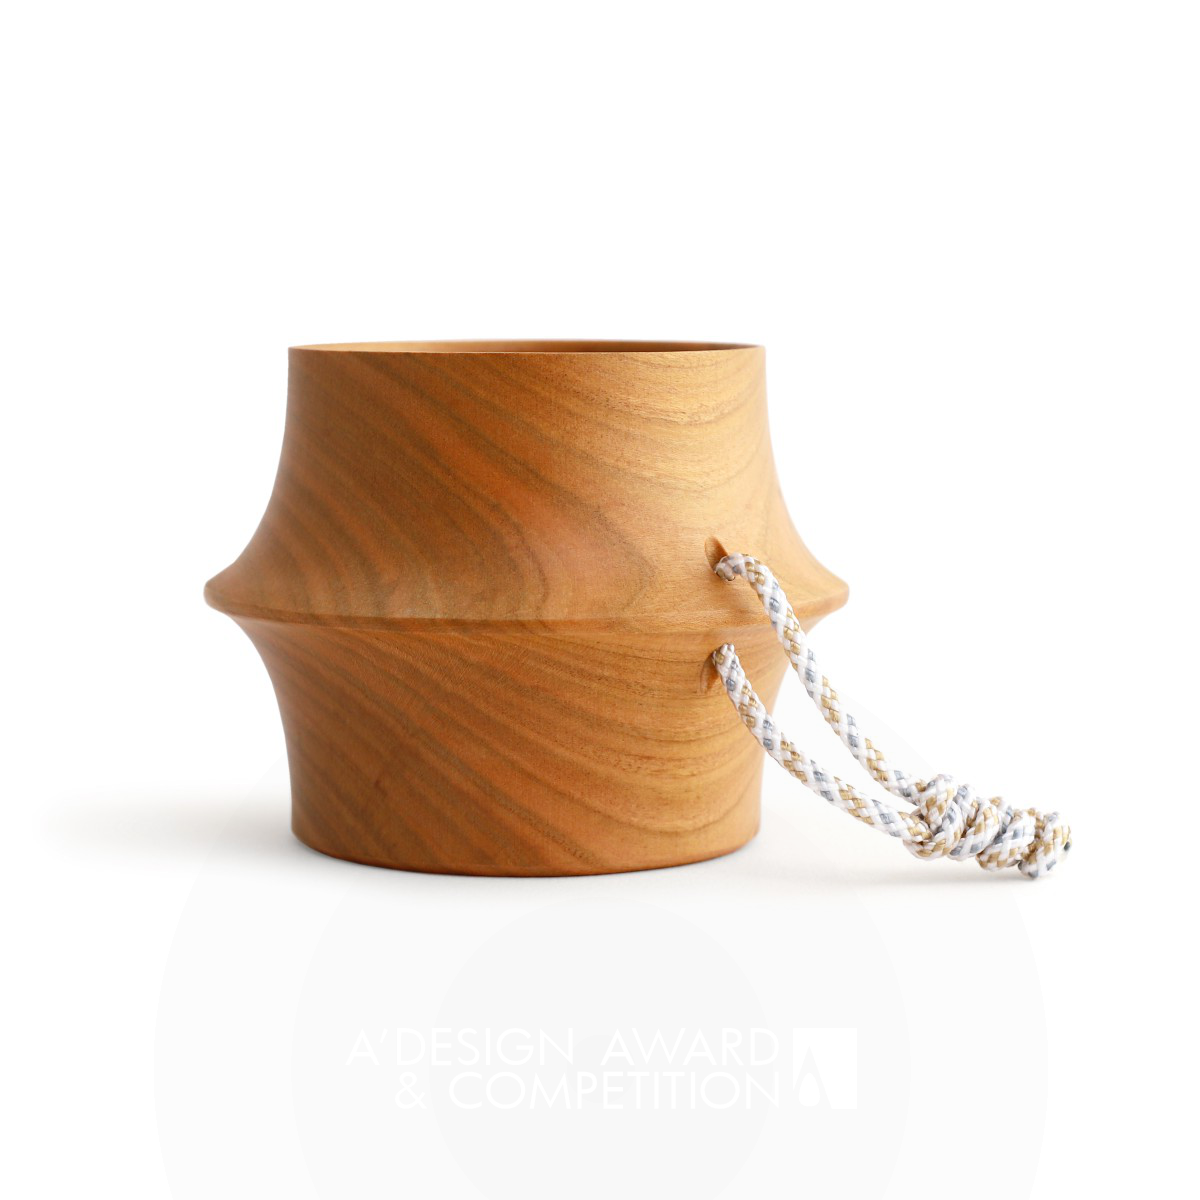 Сакура: Восхитительный дизайн чашки от Takanori Urata